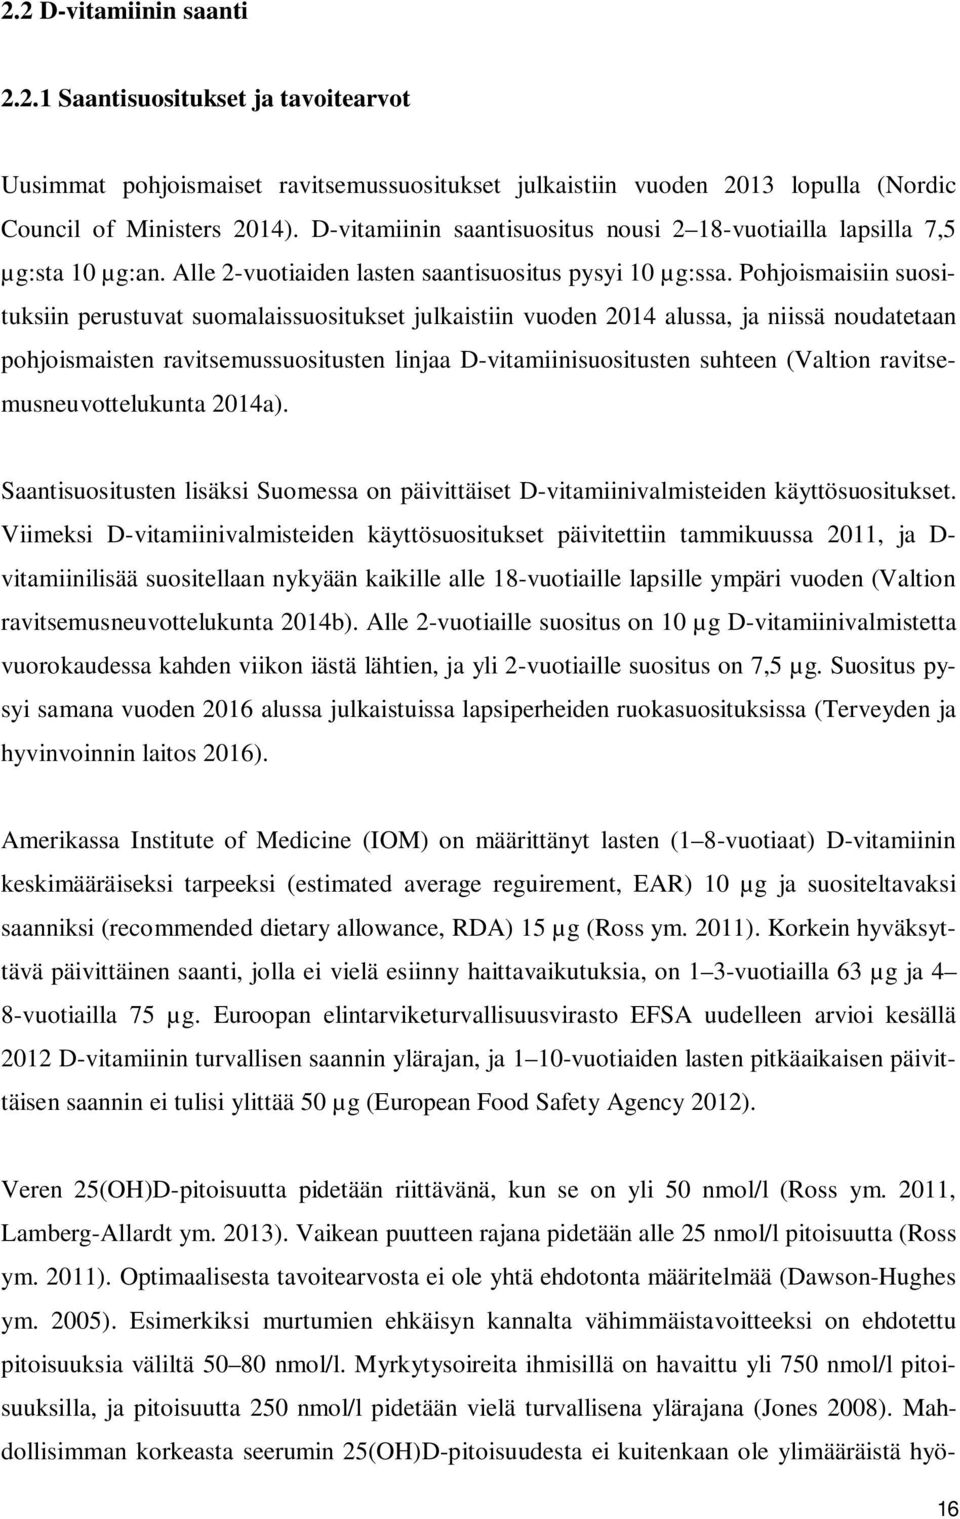 Pohjoismaisiin suosituksiin perustuvat suomalaissuositukset julkaistiin vuoden 2014 alussa, ja niissä noudatetaan pohjoismaisten ravitsemussuositusten linjaa D-vitamiinisuositusten suhteen (Valtion